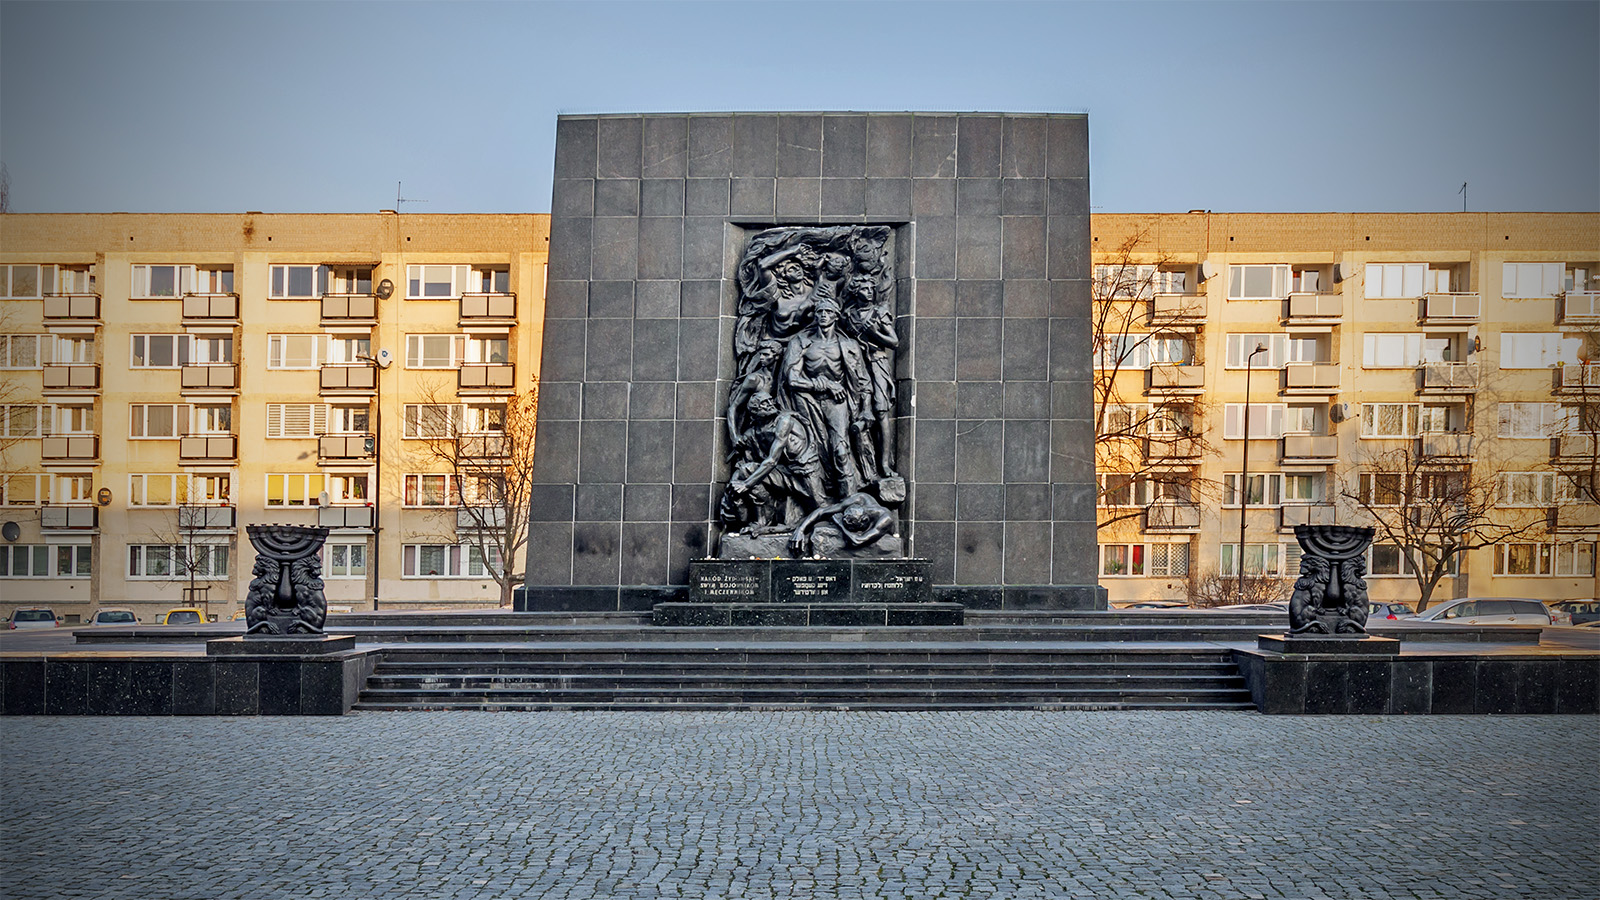 אנדרטת רפפורט לציון מרד גטו ורשה (צילום: Bennian / Shutterstock)